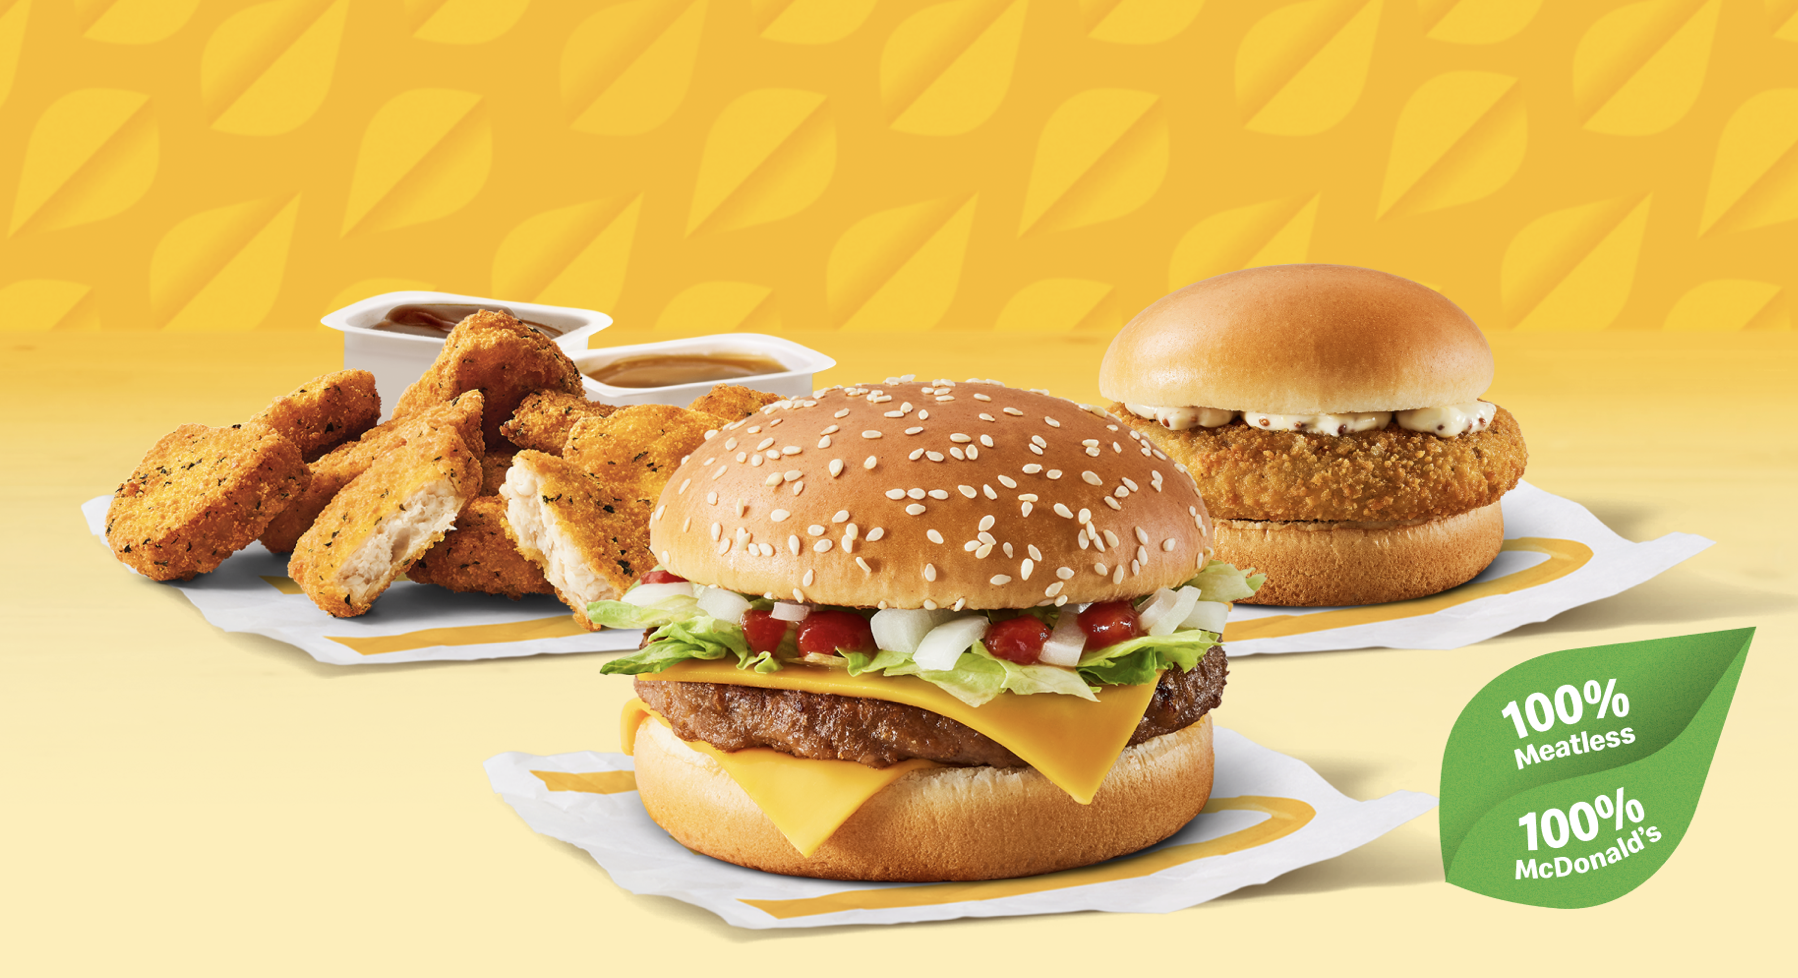 McDonald's daagt gasten uit met Meatless campagne